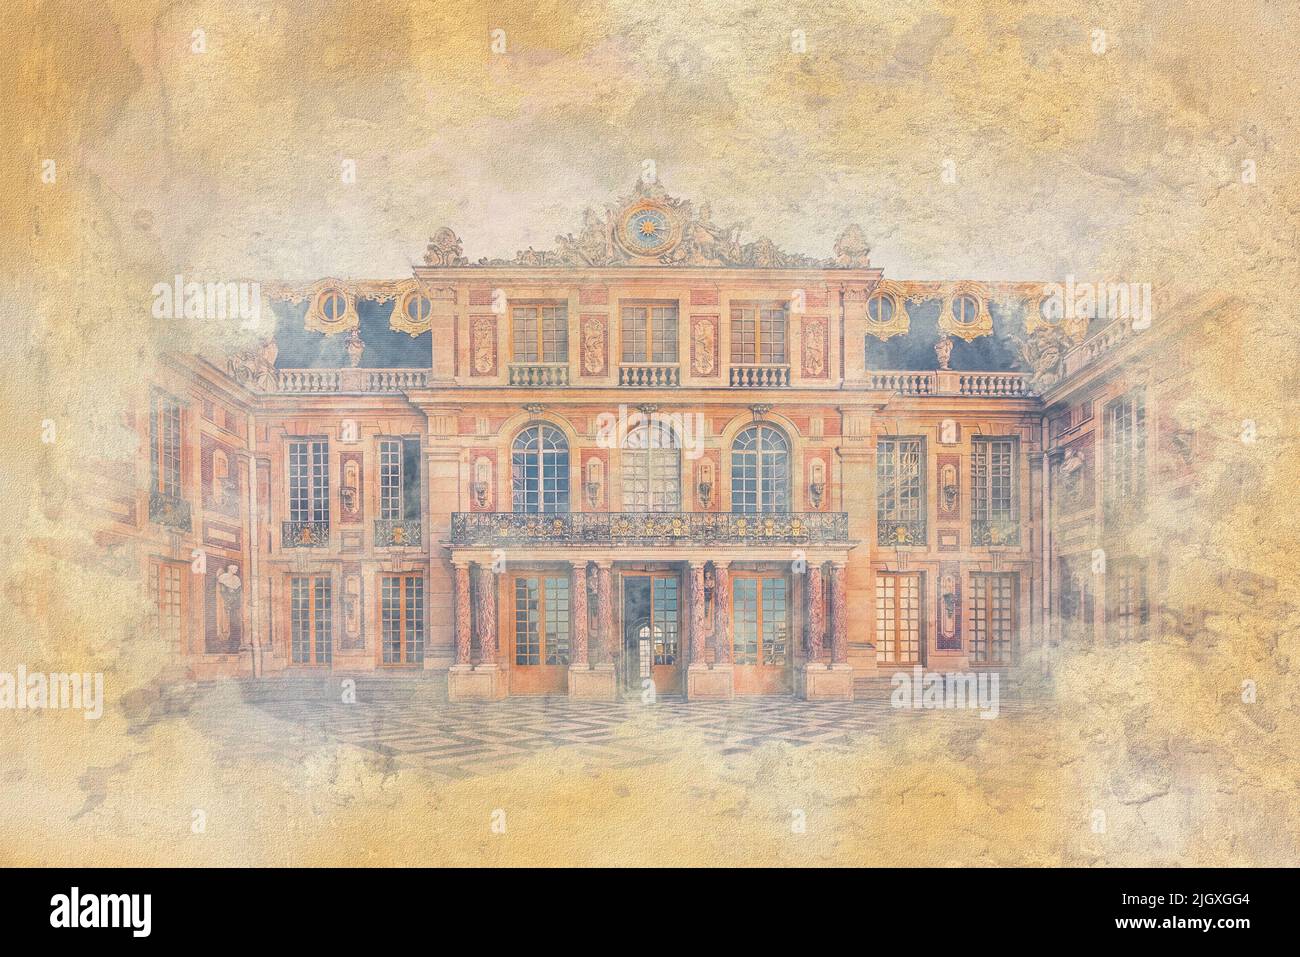 Façade du château de Versailles - Illustration avec effet aquarelle Banque D'Images